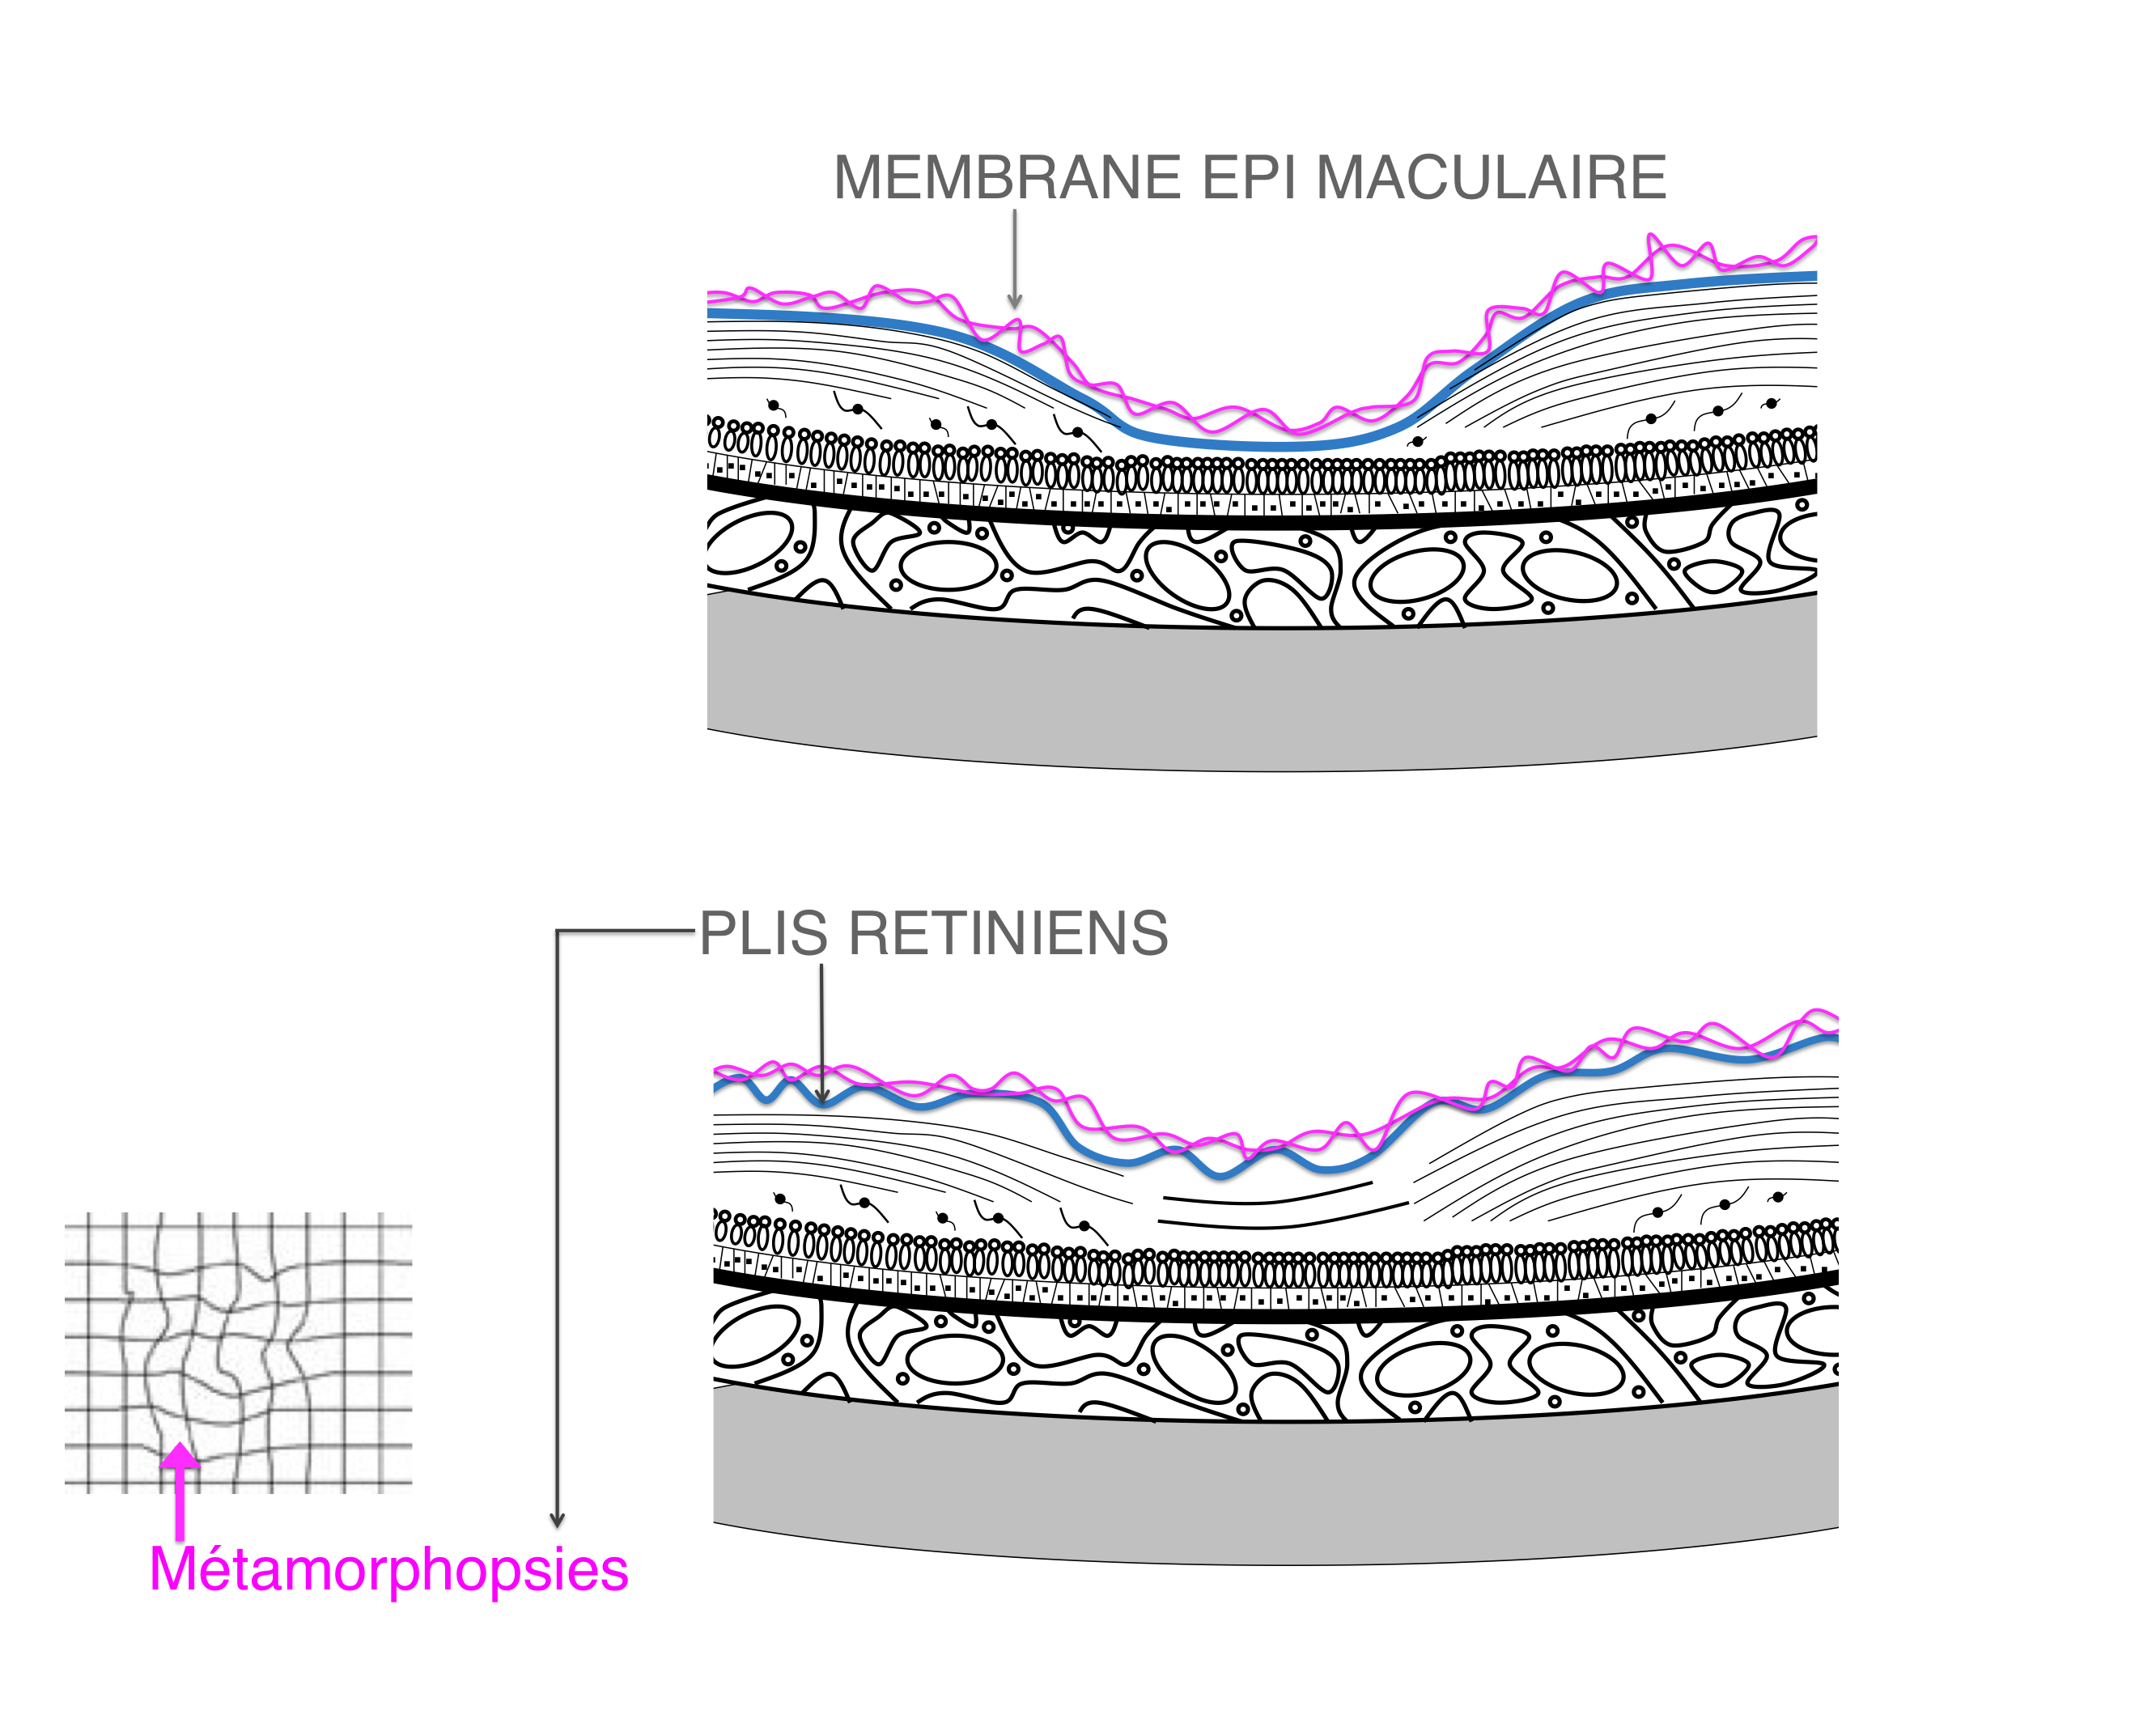 membrane épirétinienne : plis rétiniens à l'origine de déformations des lignes droites qui apparaissent ondulées (métamorphopsies)